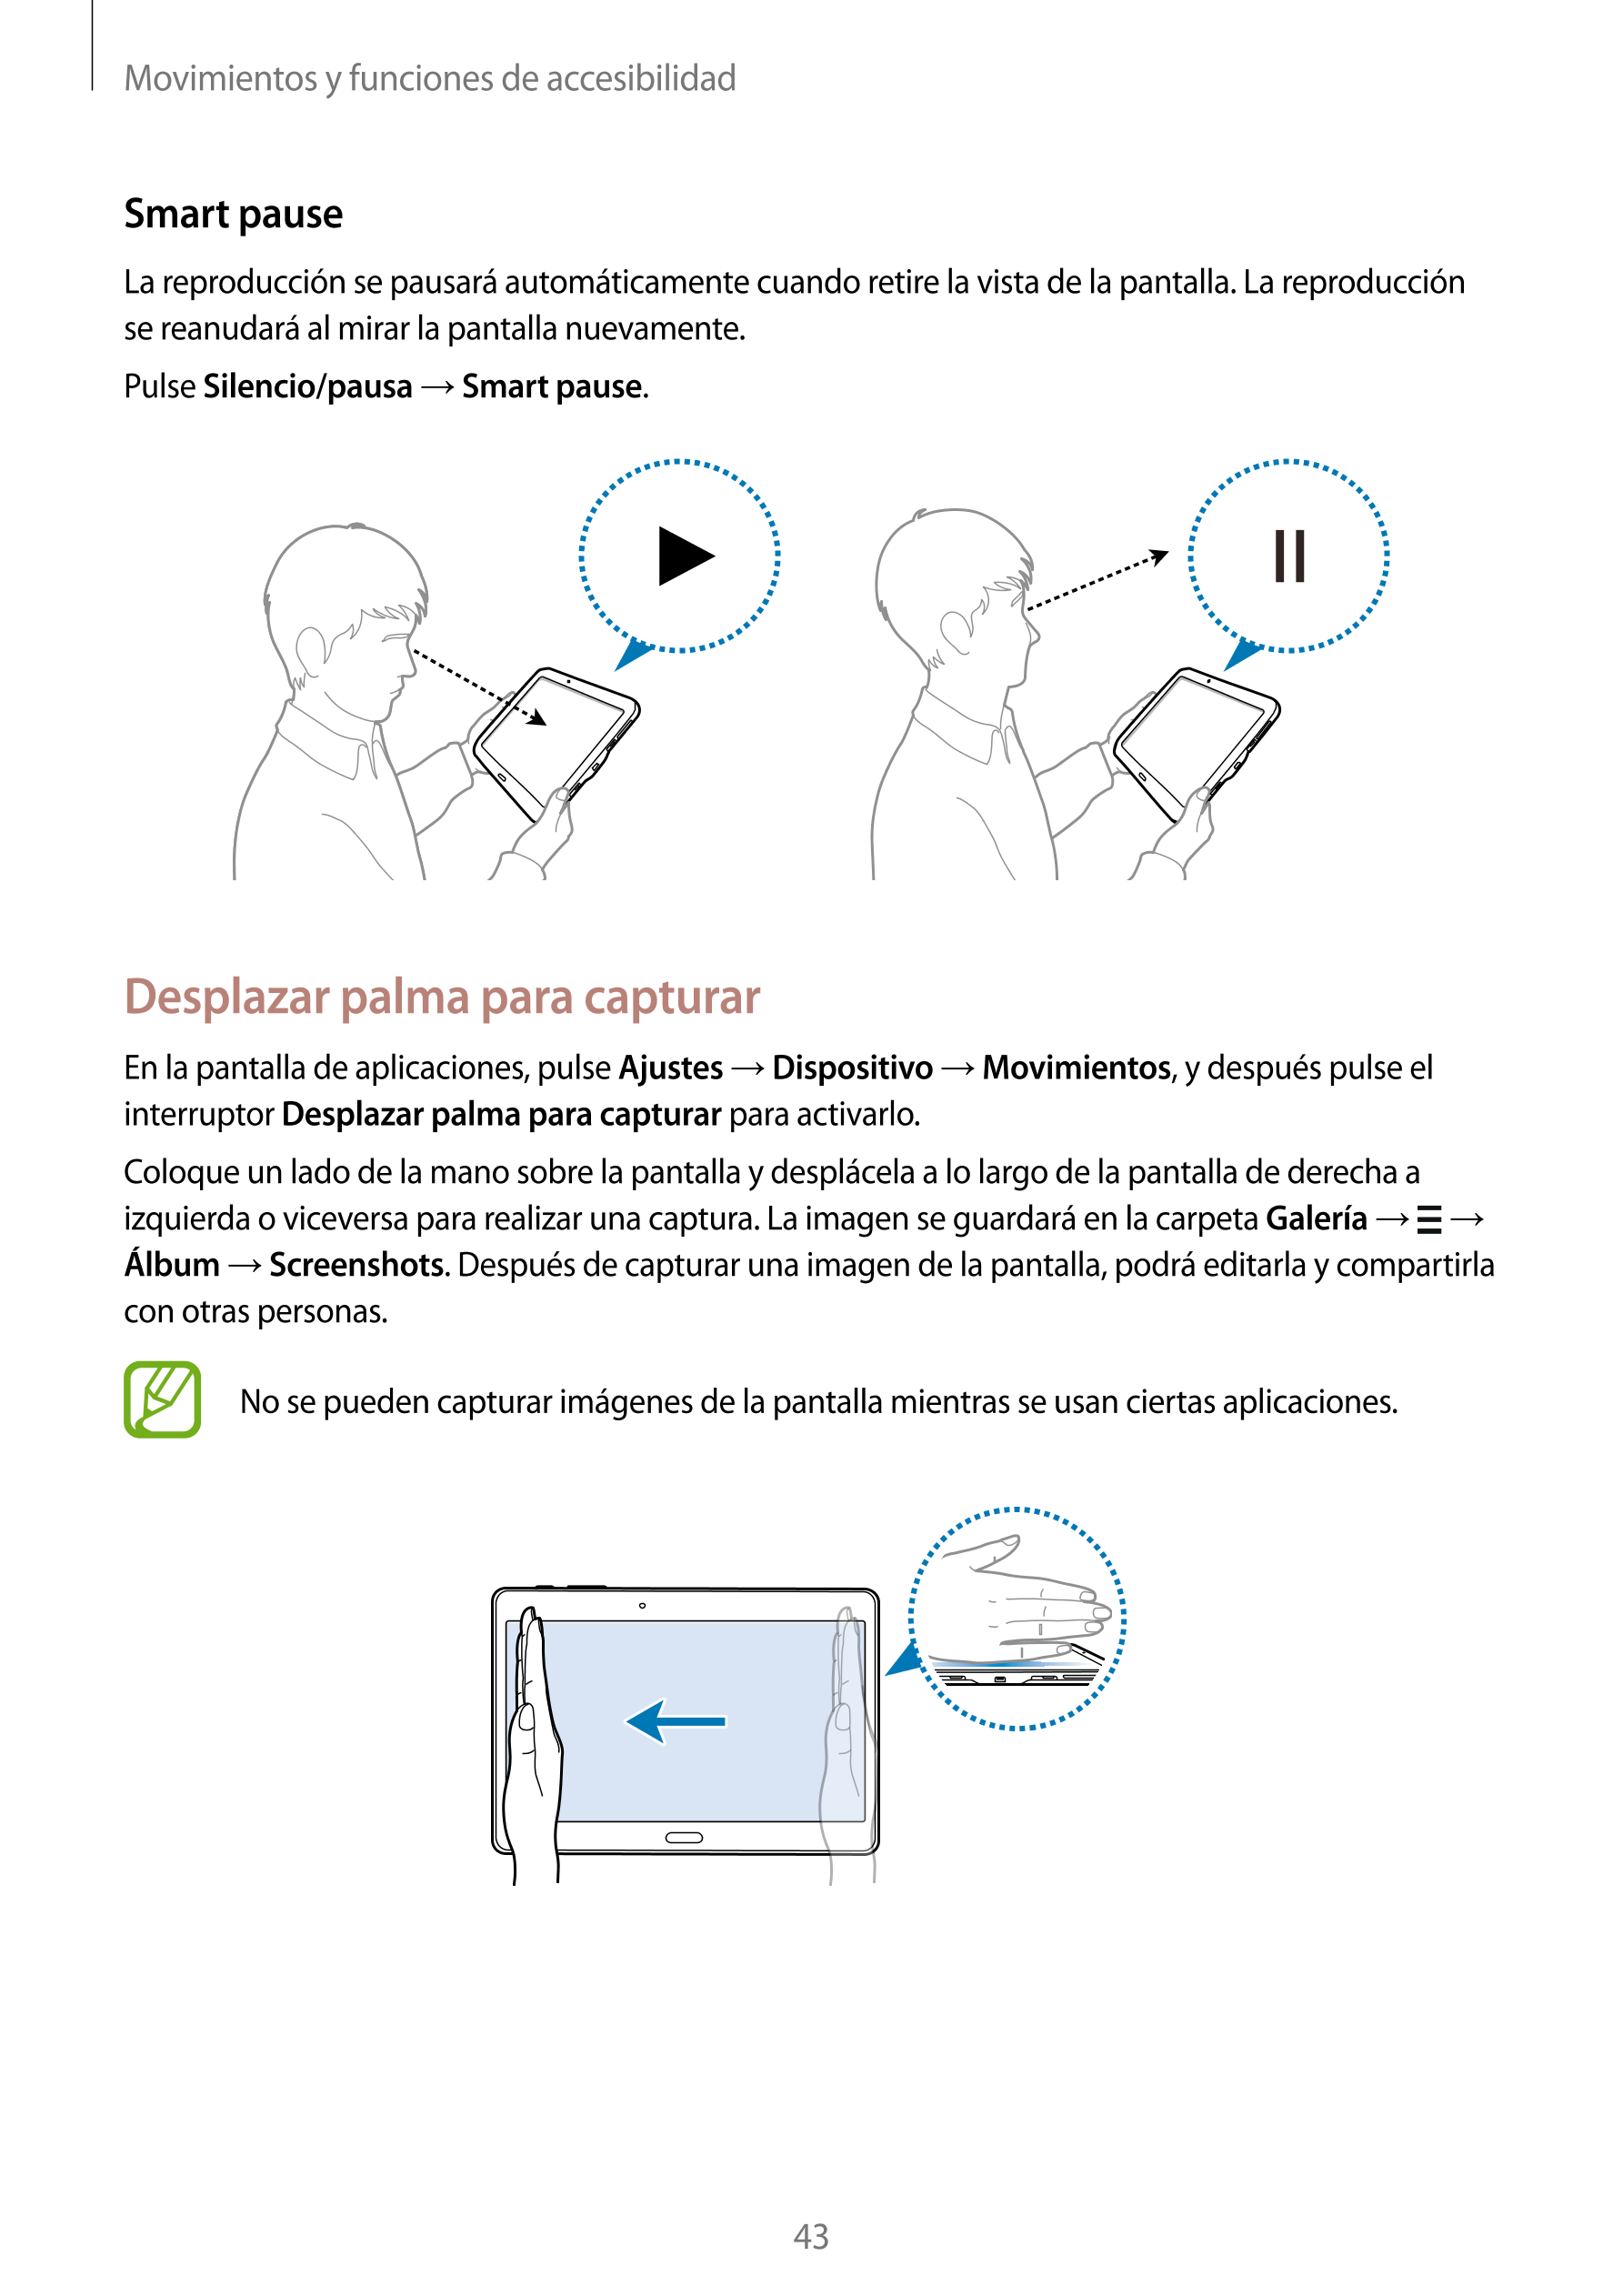 Movimientos y funciones de accesibilidad
Smart pause
La reproducción se pausará automáticamente cuando retire la vista de la pan